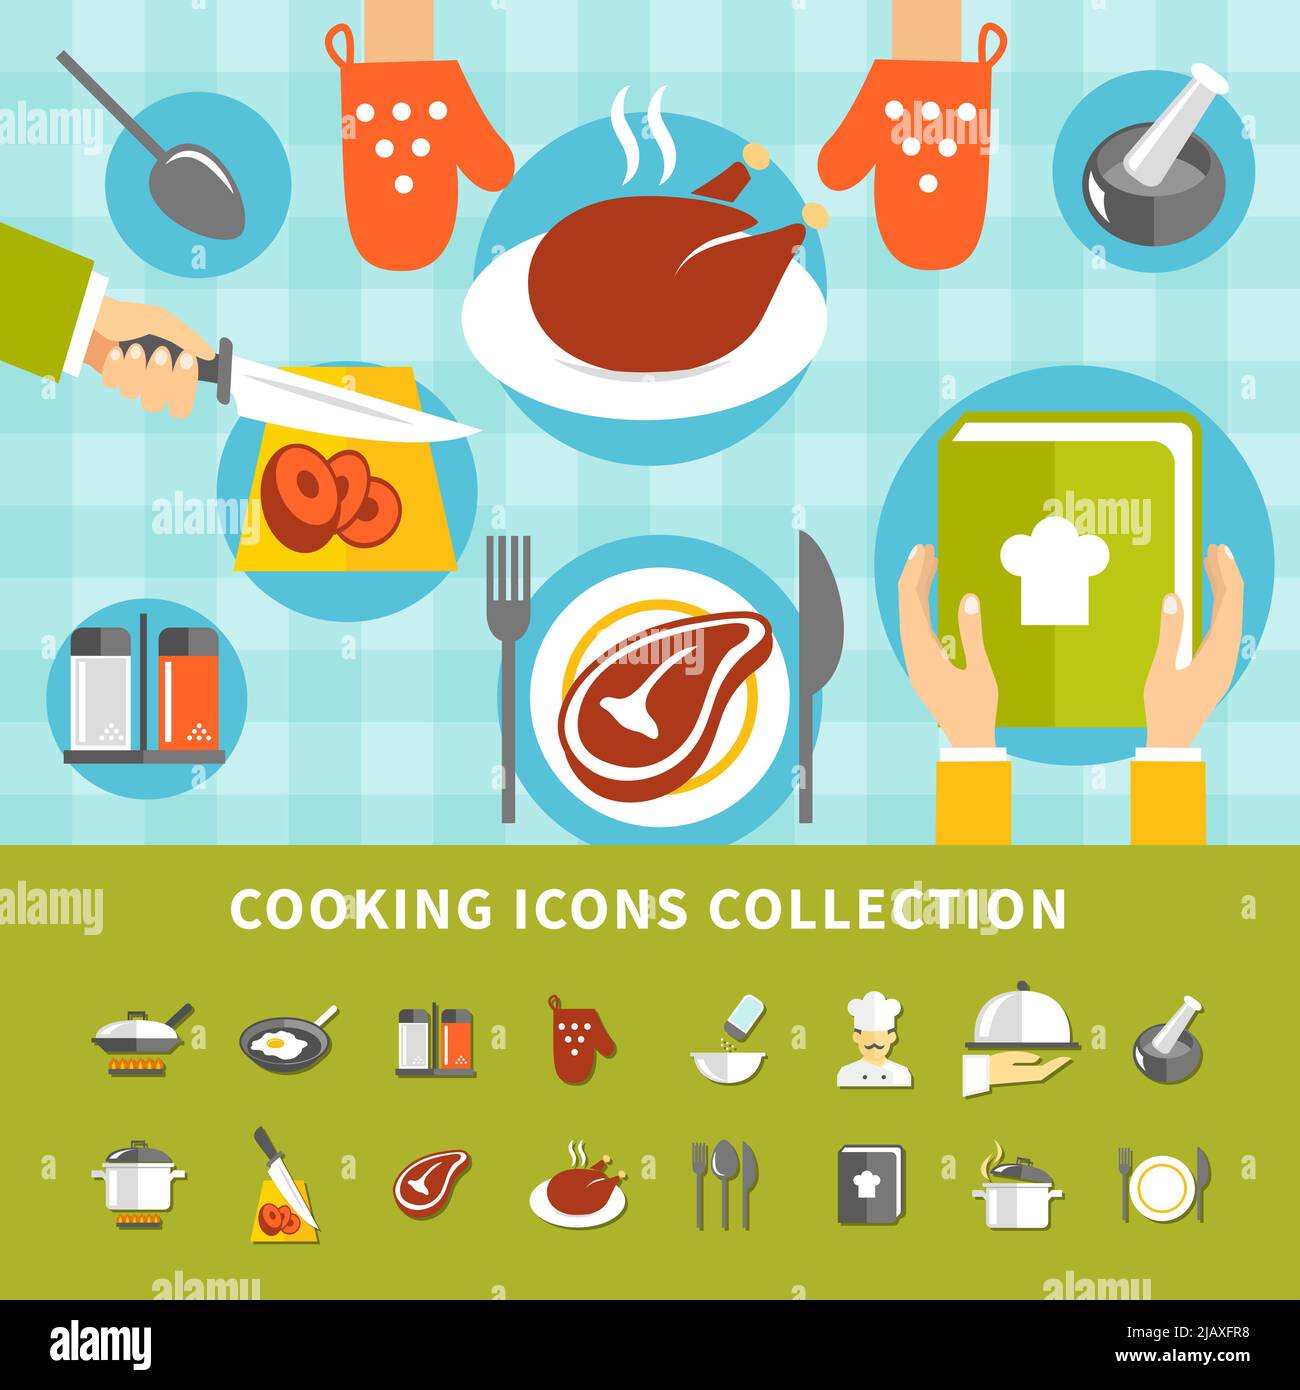 Kochelemente Set mit Küchenutensilien verschiedene Gerichte Mahlzeiten Zutaten Koch Kochbuch in flachem Stil Vektor-Illustration Stock Vektor